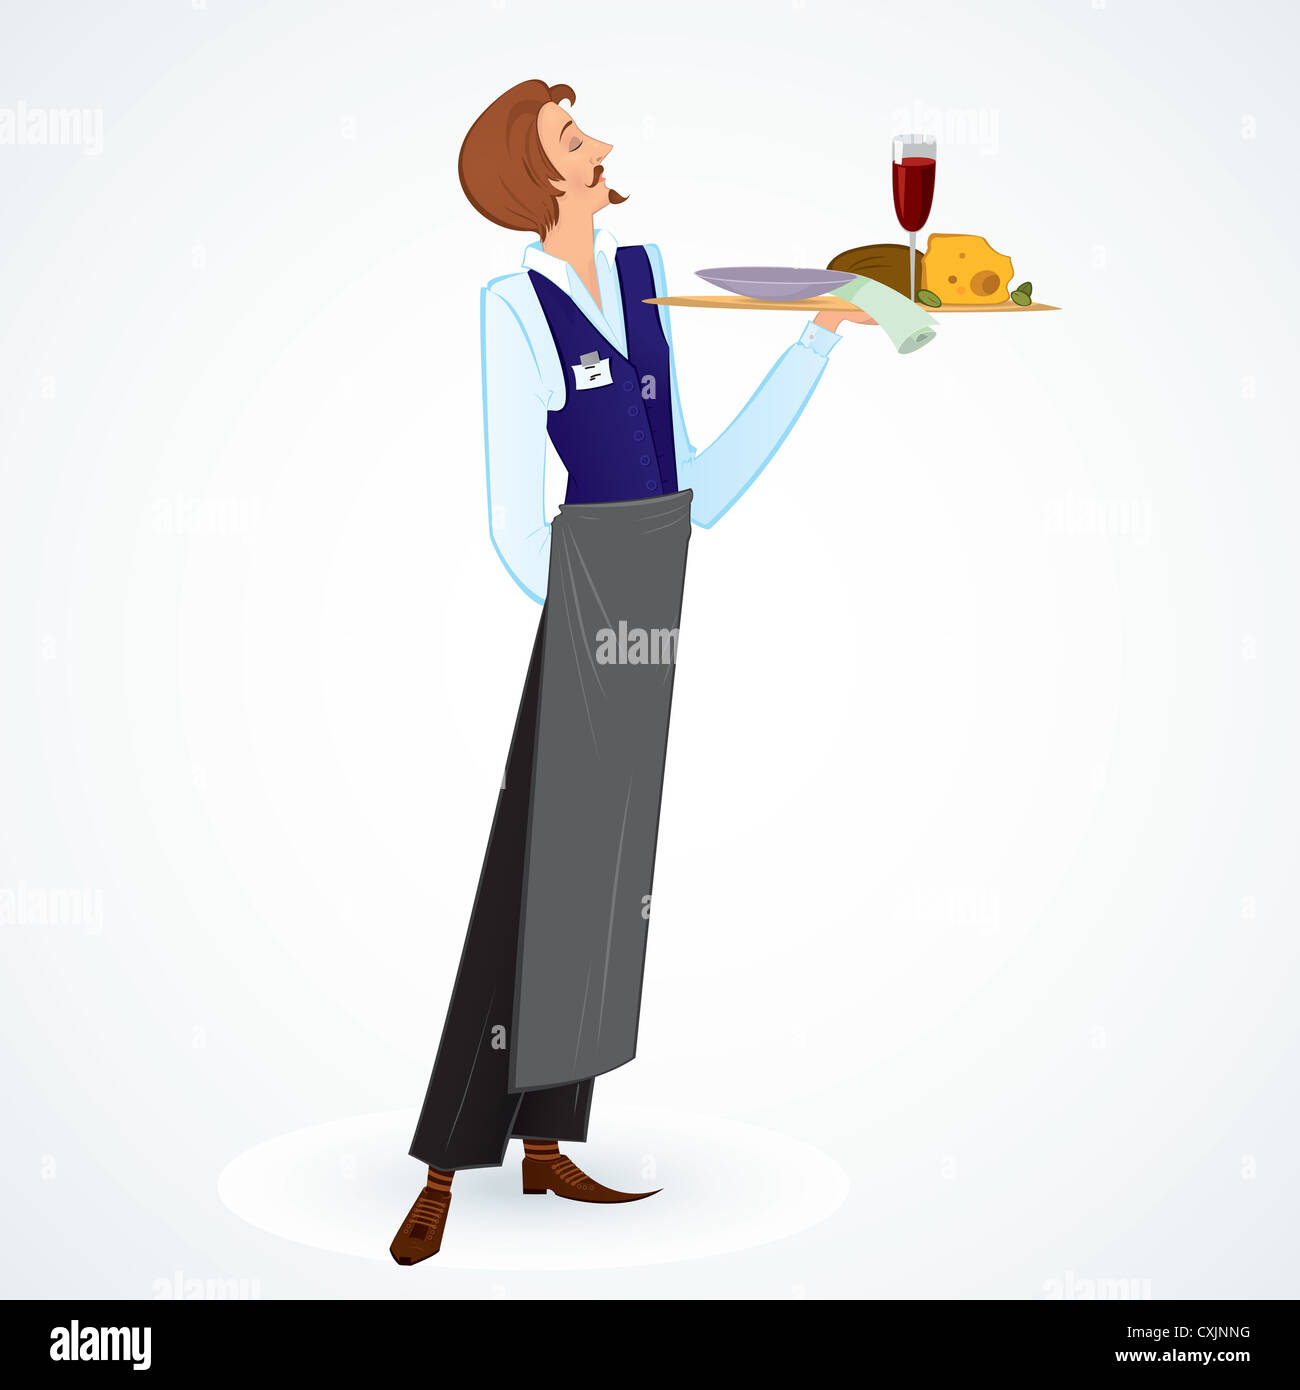 Vector illustration d'un jeune garçon mince tenant un plateau avec de la nourriture Banque D'Images